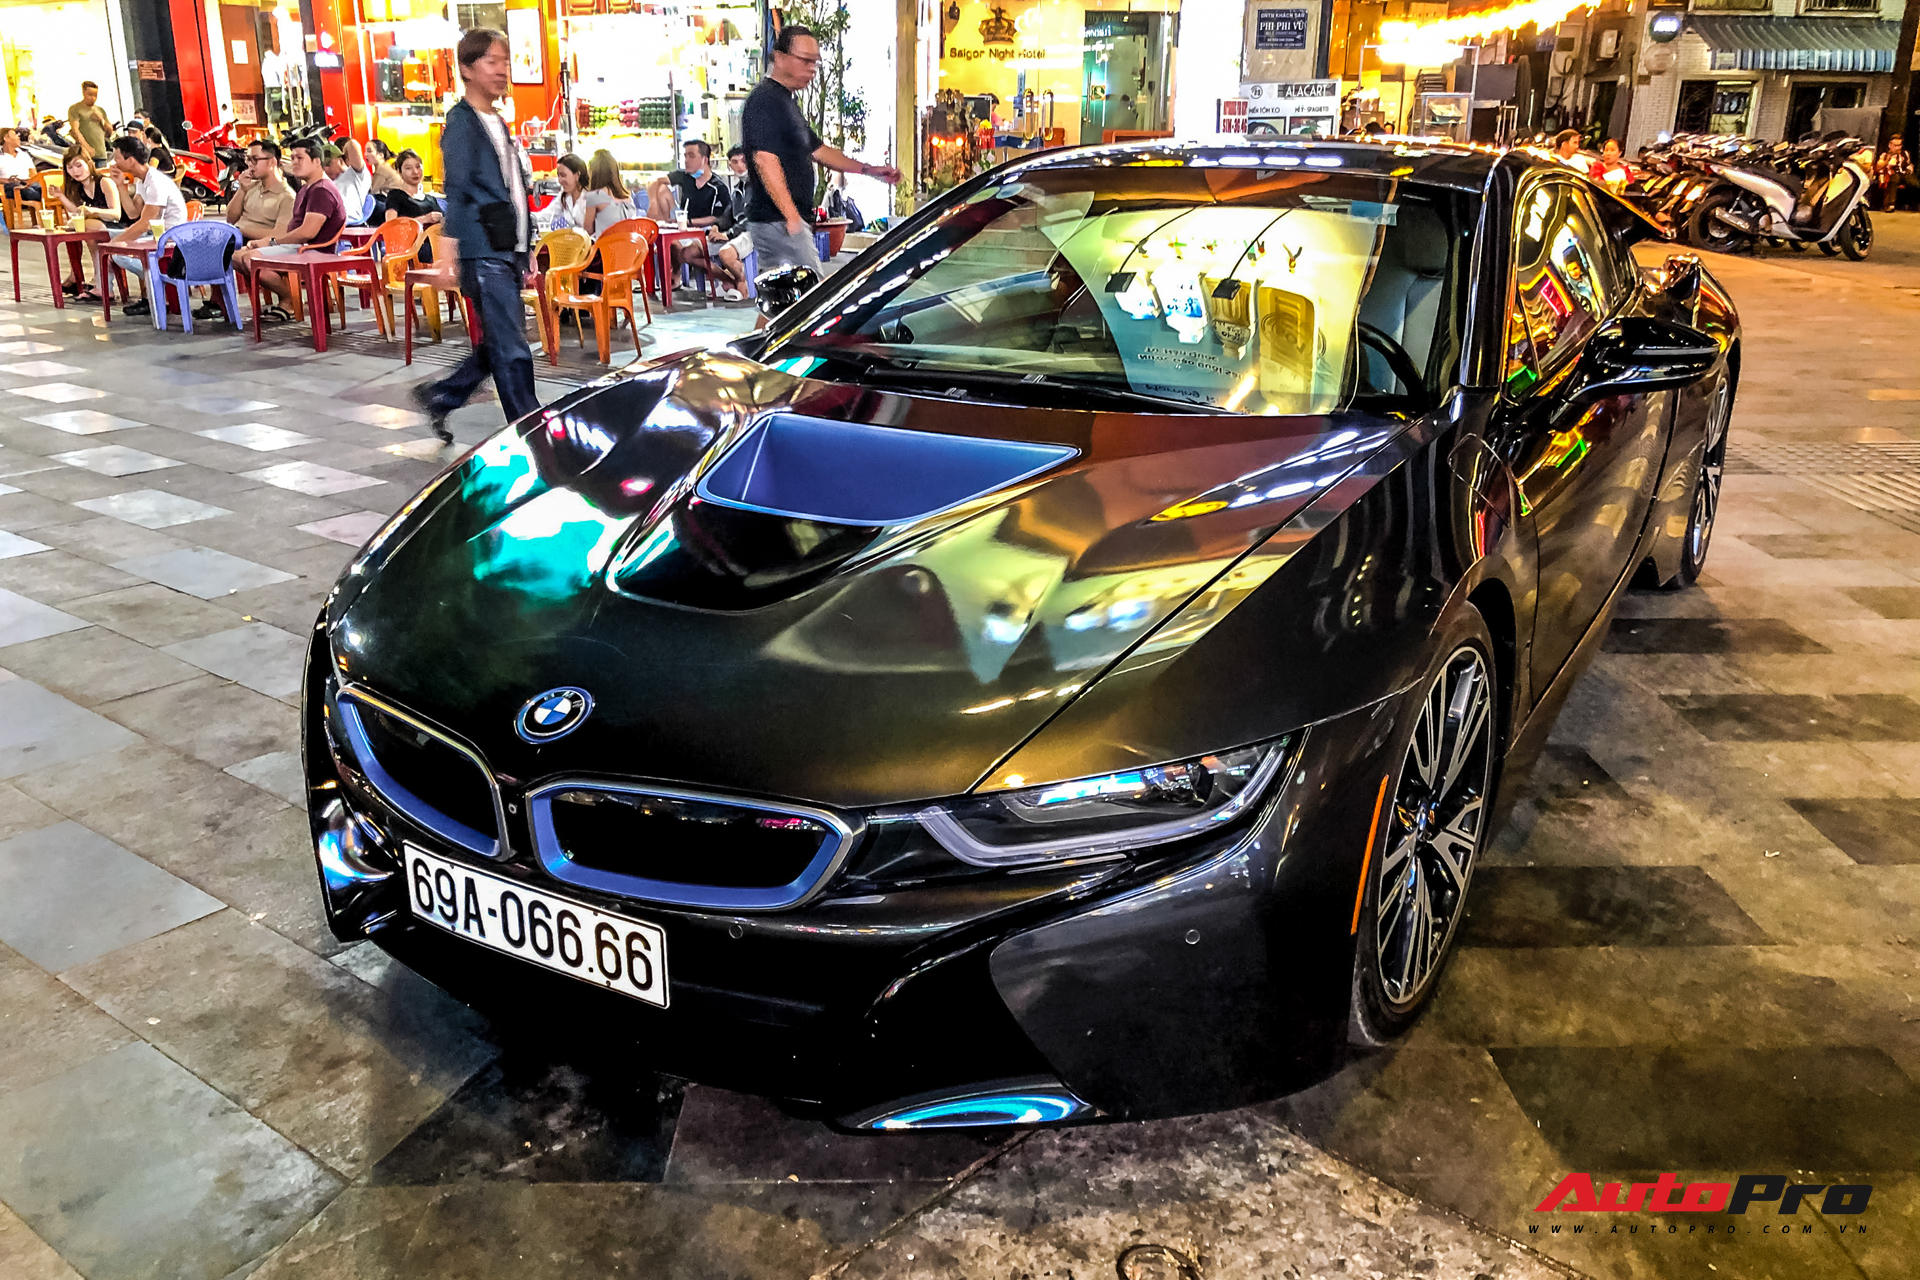 BMW có thể sắp có siêu xe điện sức mạnh 1300 mã lực  Automotive  Thông  tin hình ảnh đánh giá xe ôtô xe máy xe điện  VnEconomy